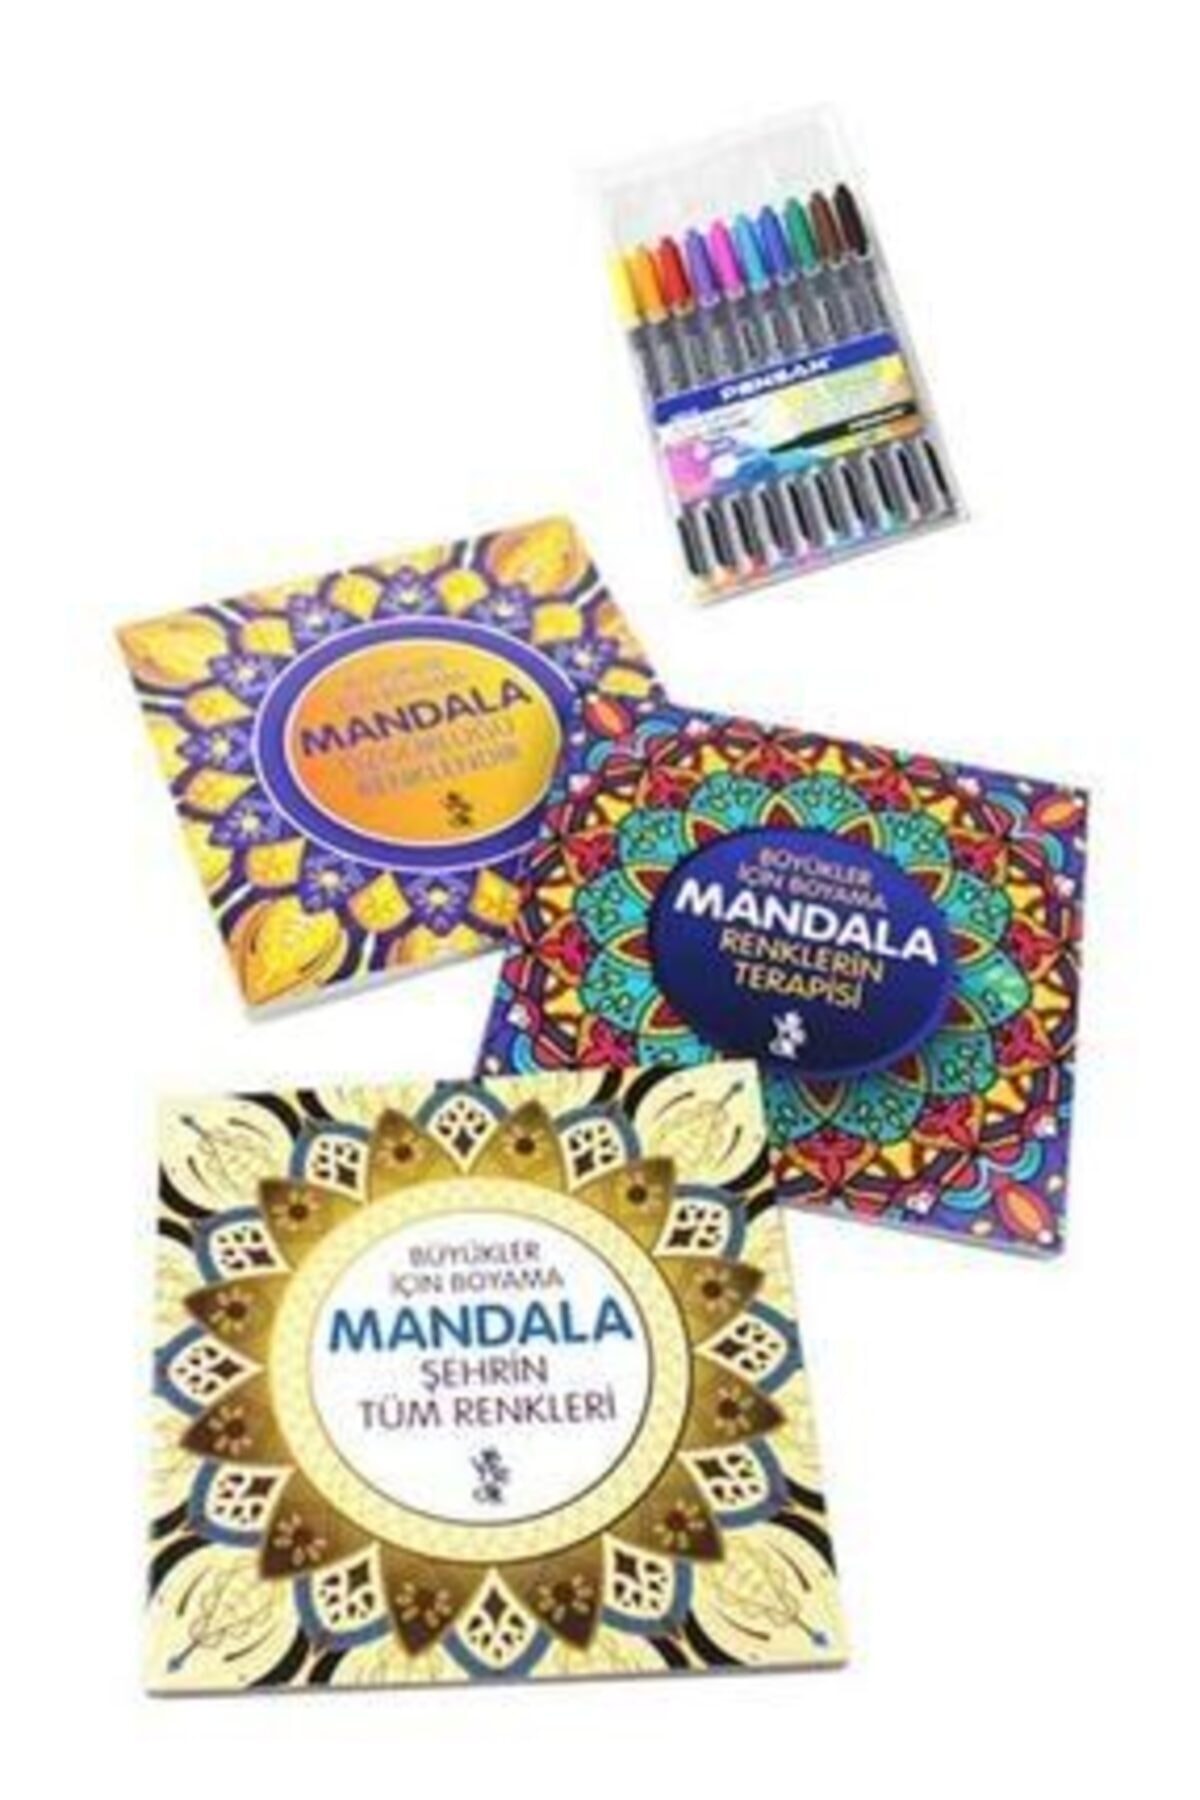 Mandala Büyükler Için Boyama Seti - 3 Kitap Ve 10'lu Kalem